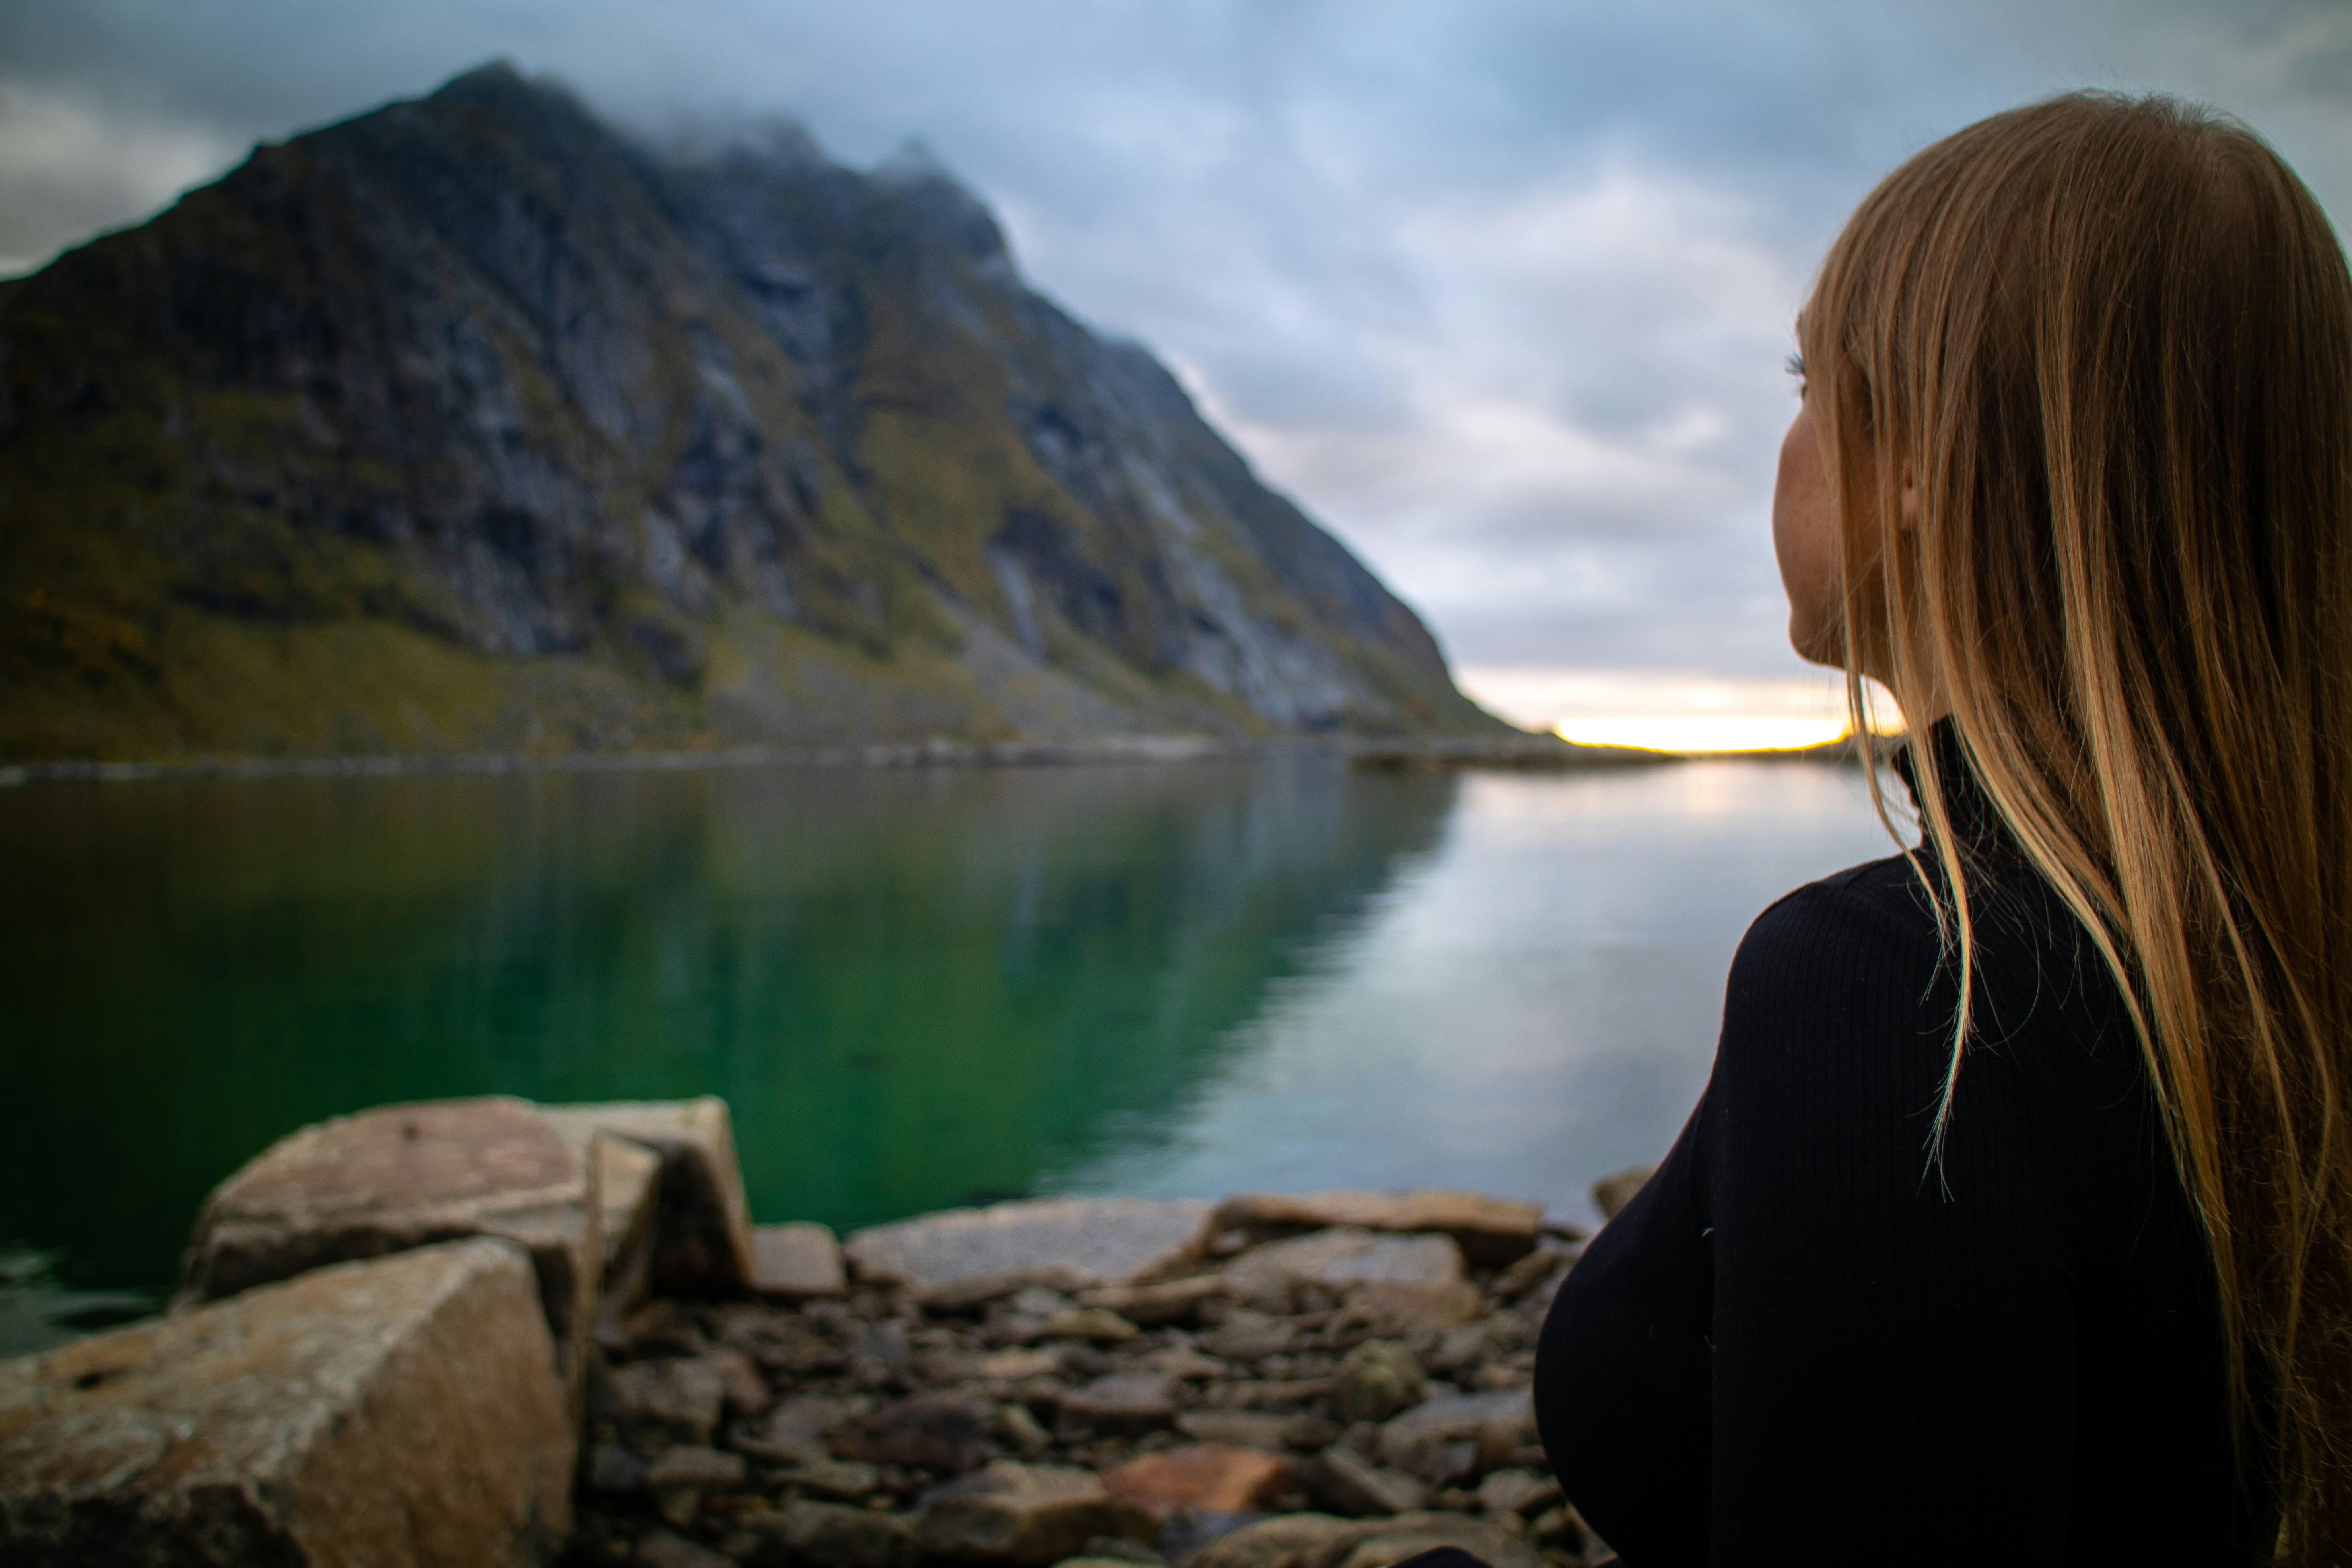 woman in black jacket sitting on rock near lake during daytime